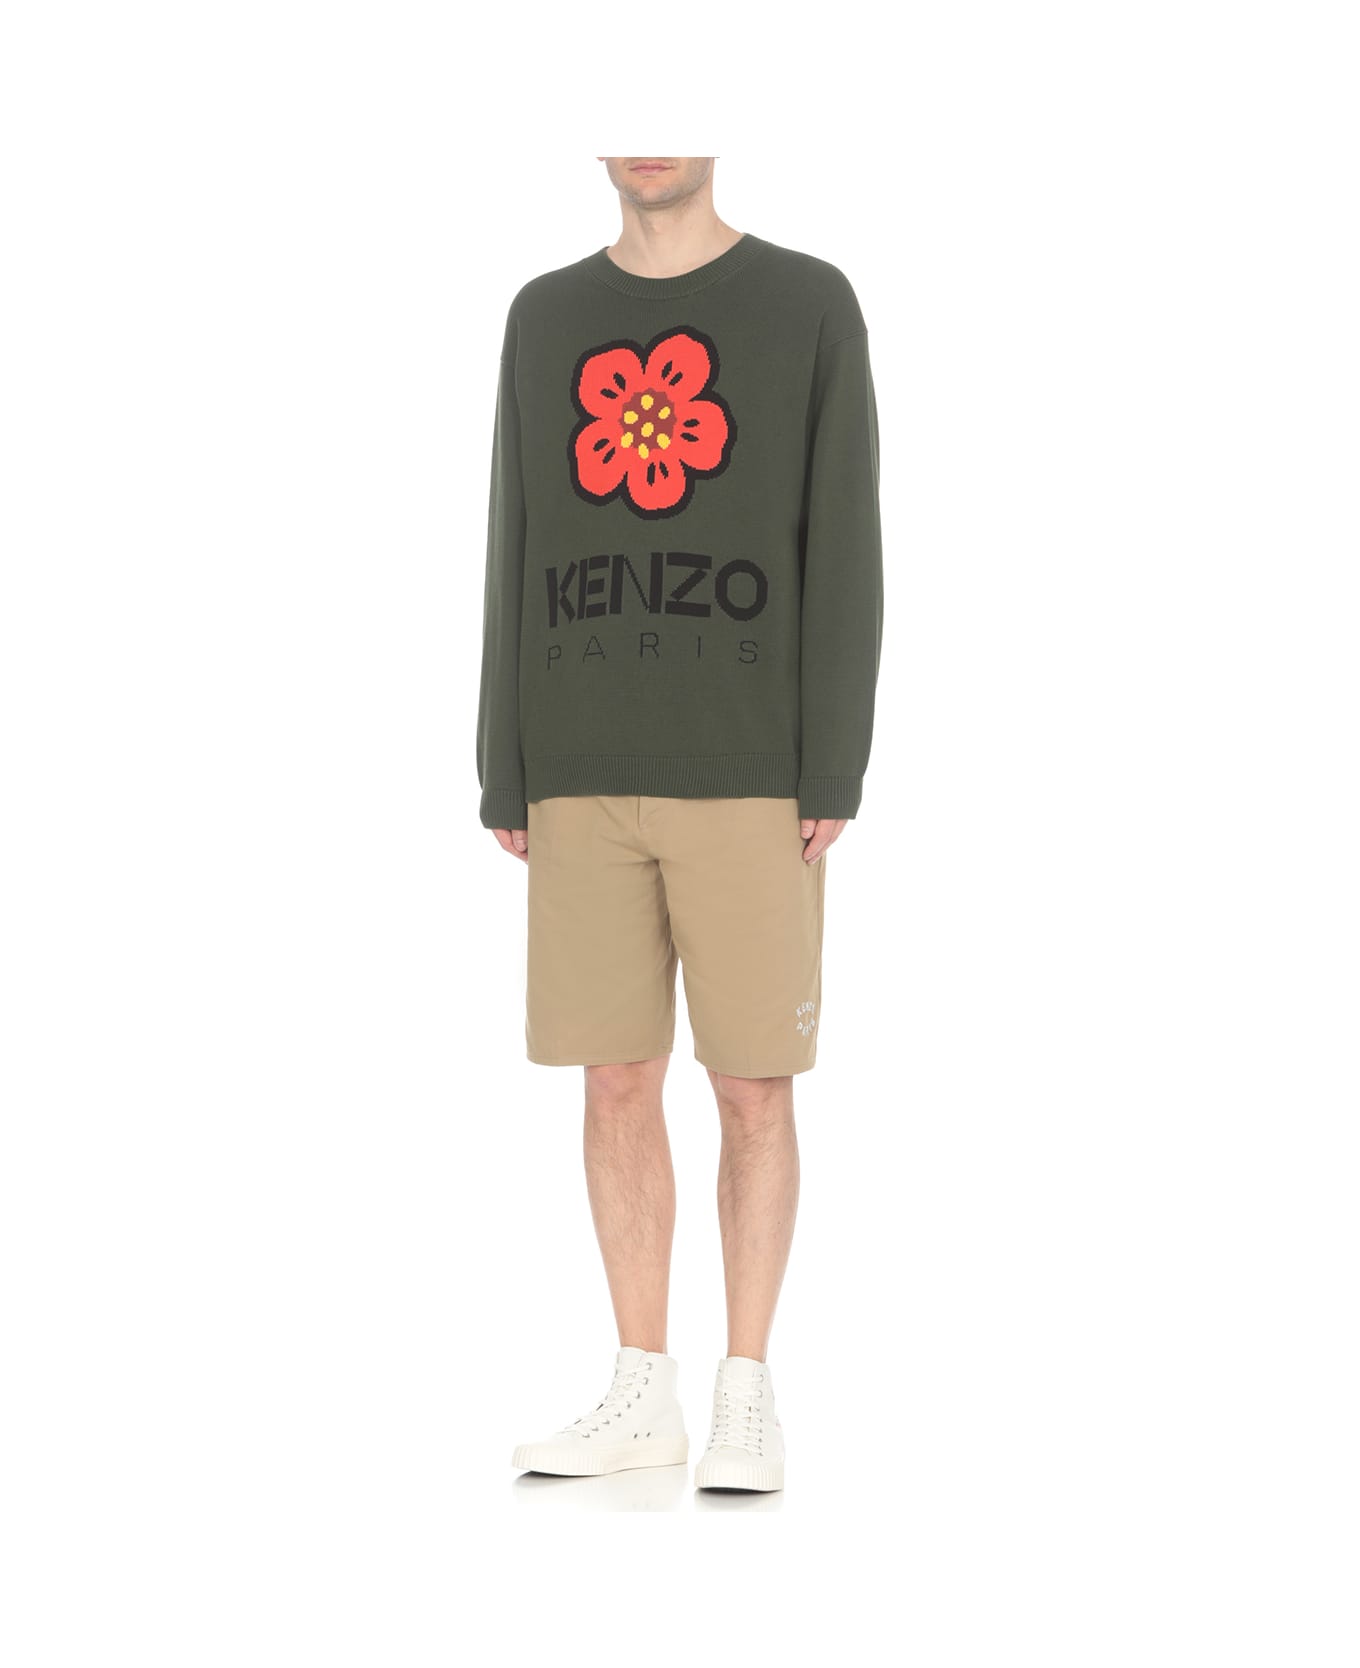 Kenzo Boke Flower Sweater - Green ニットウェア